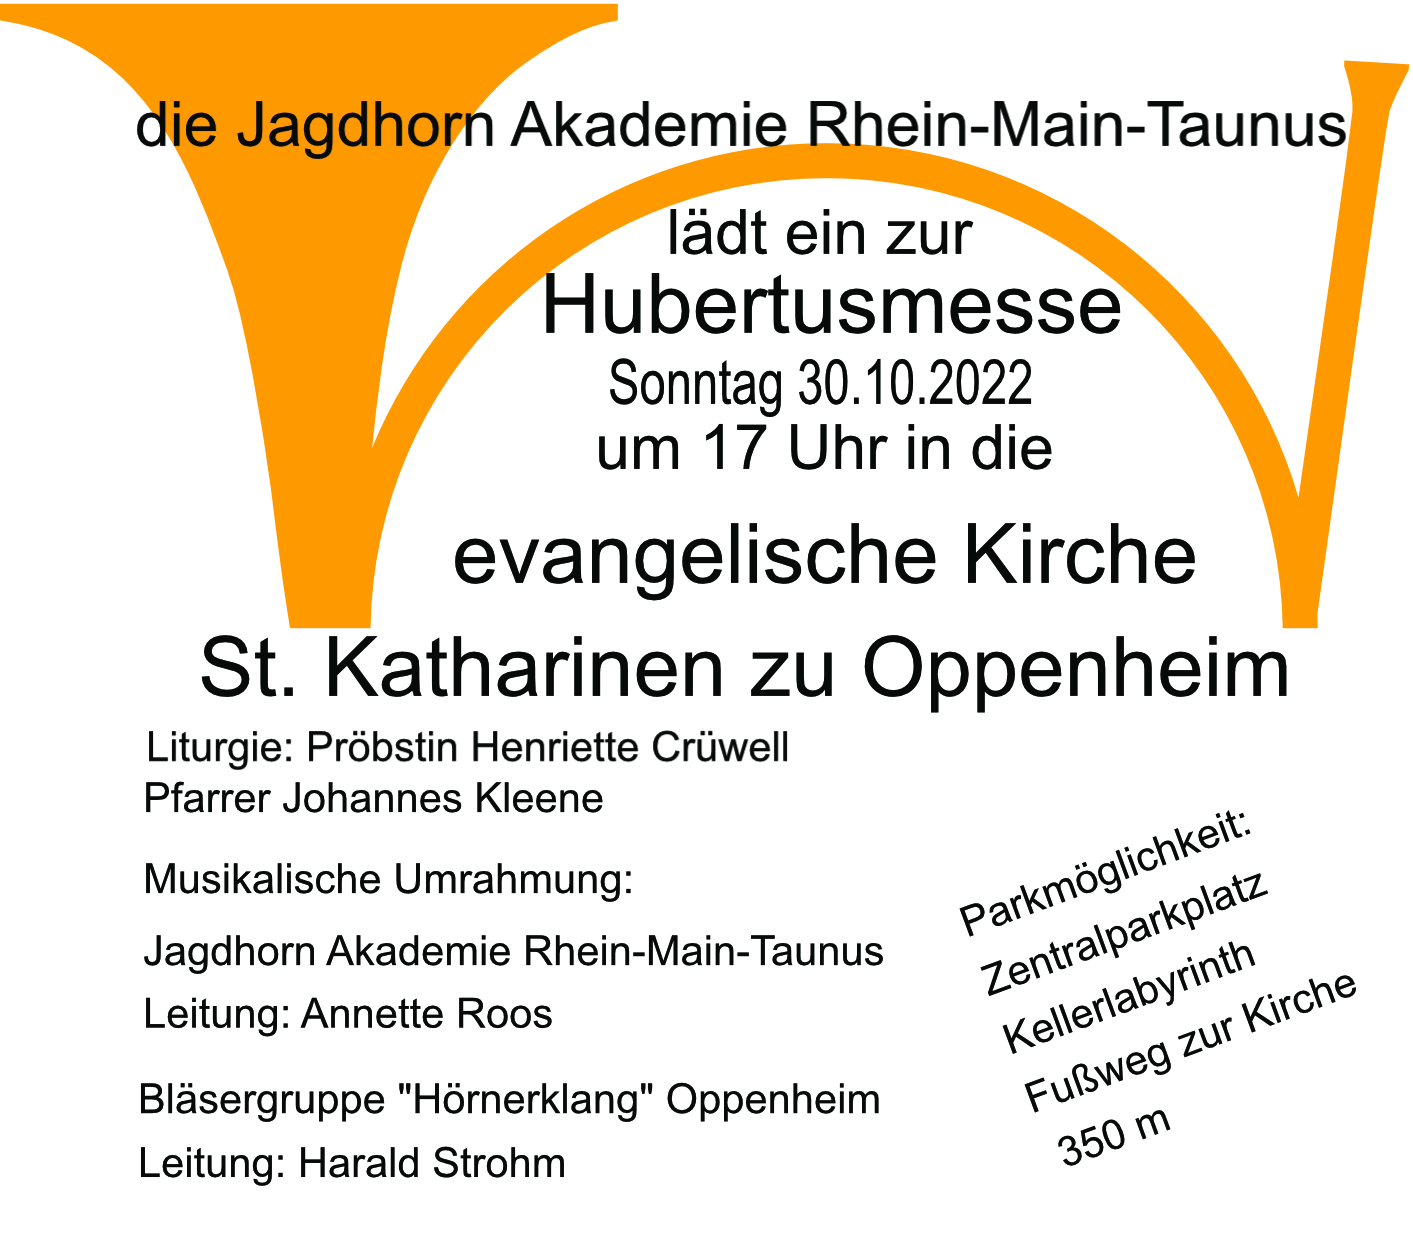 Hubertusmesse 30.10.2022 Jagdhorn Akademie Rhein-Main-Taunus (1) (c) Frau Roos